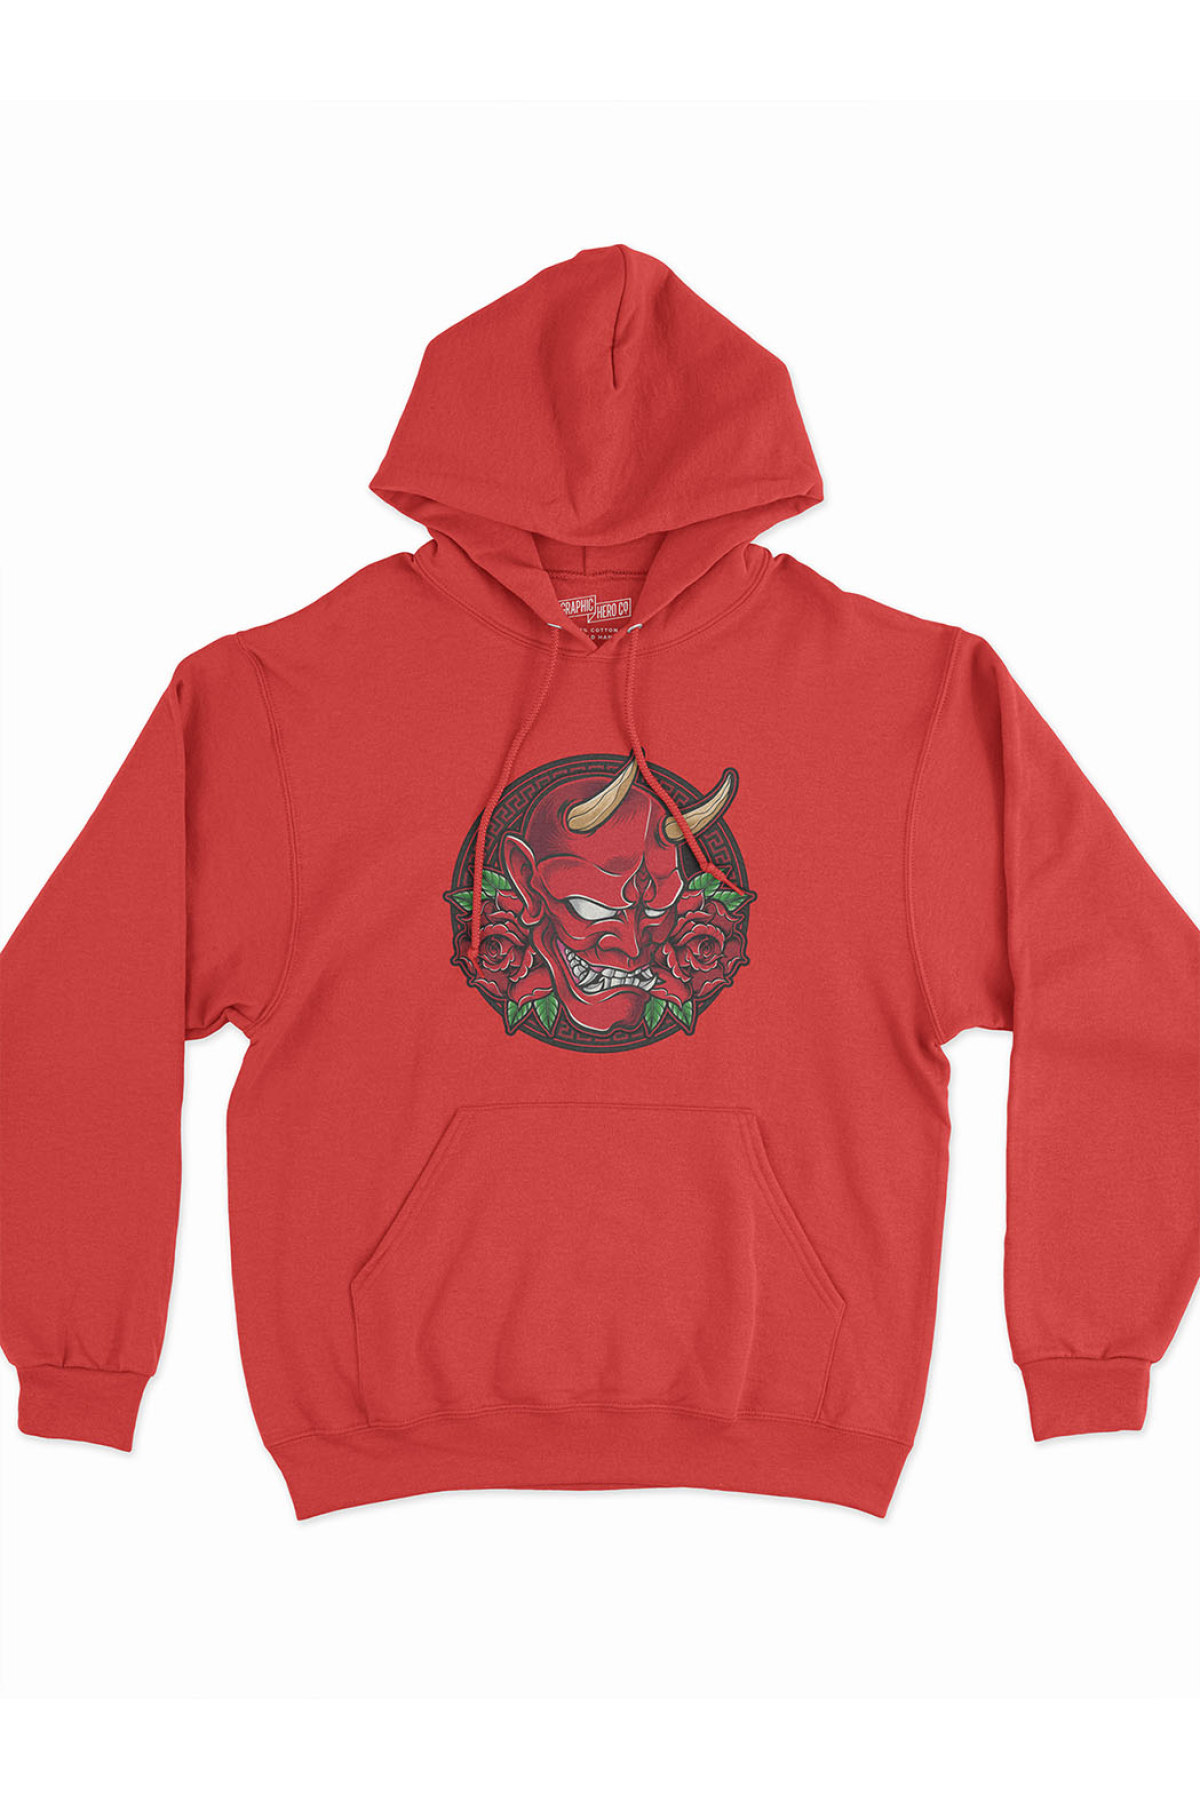 MIJUSTORE Şeytan Baskılı Oversize Kırmızı 3 İplik Kalın Sweatshirt Hoodie